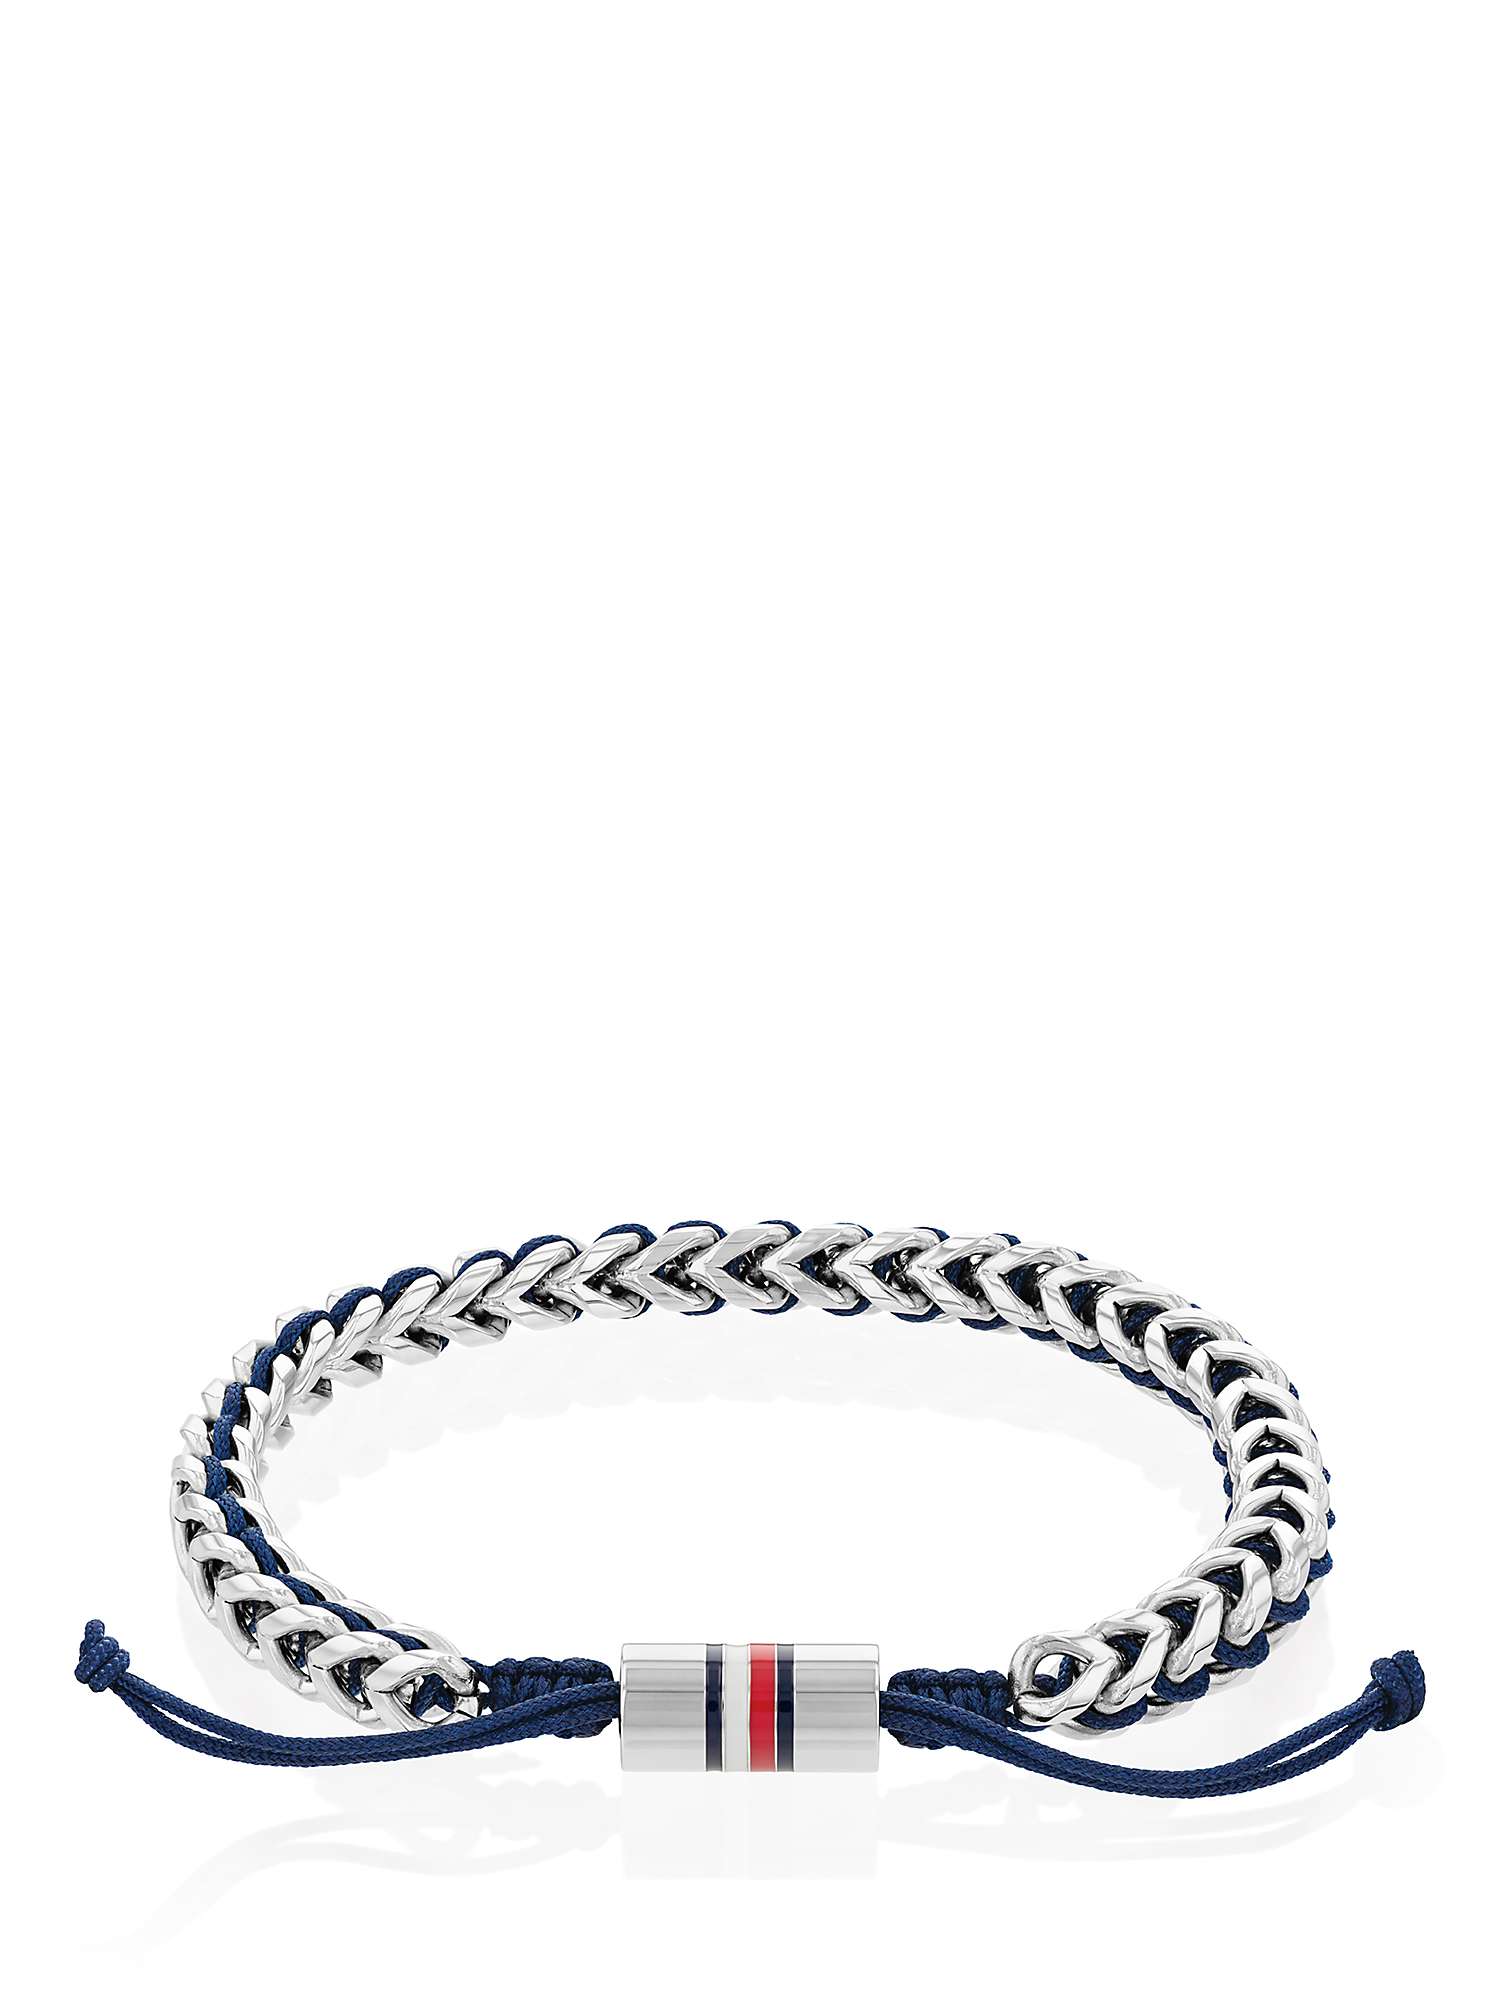 Buy Tommy Hilfiger Men's Braided Bracelet, Silver/Blue Online at johnlewis.com